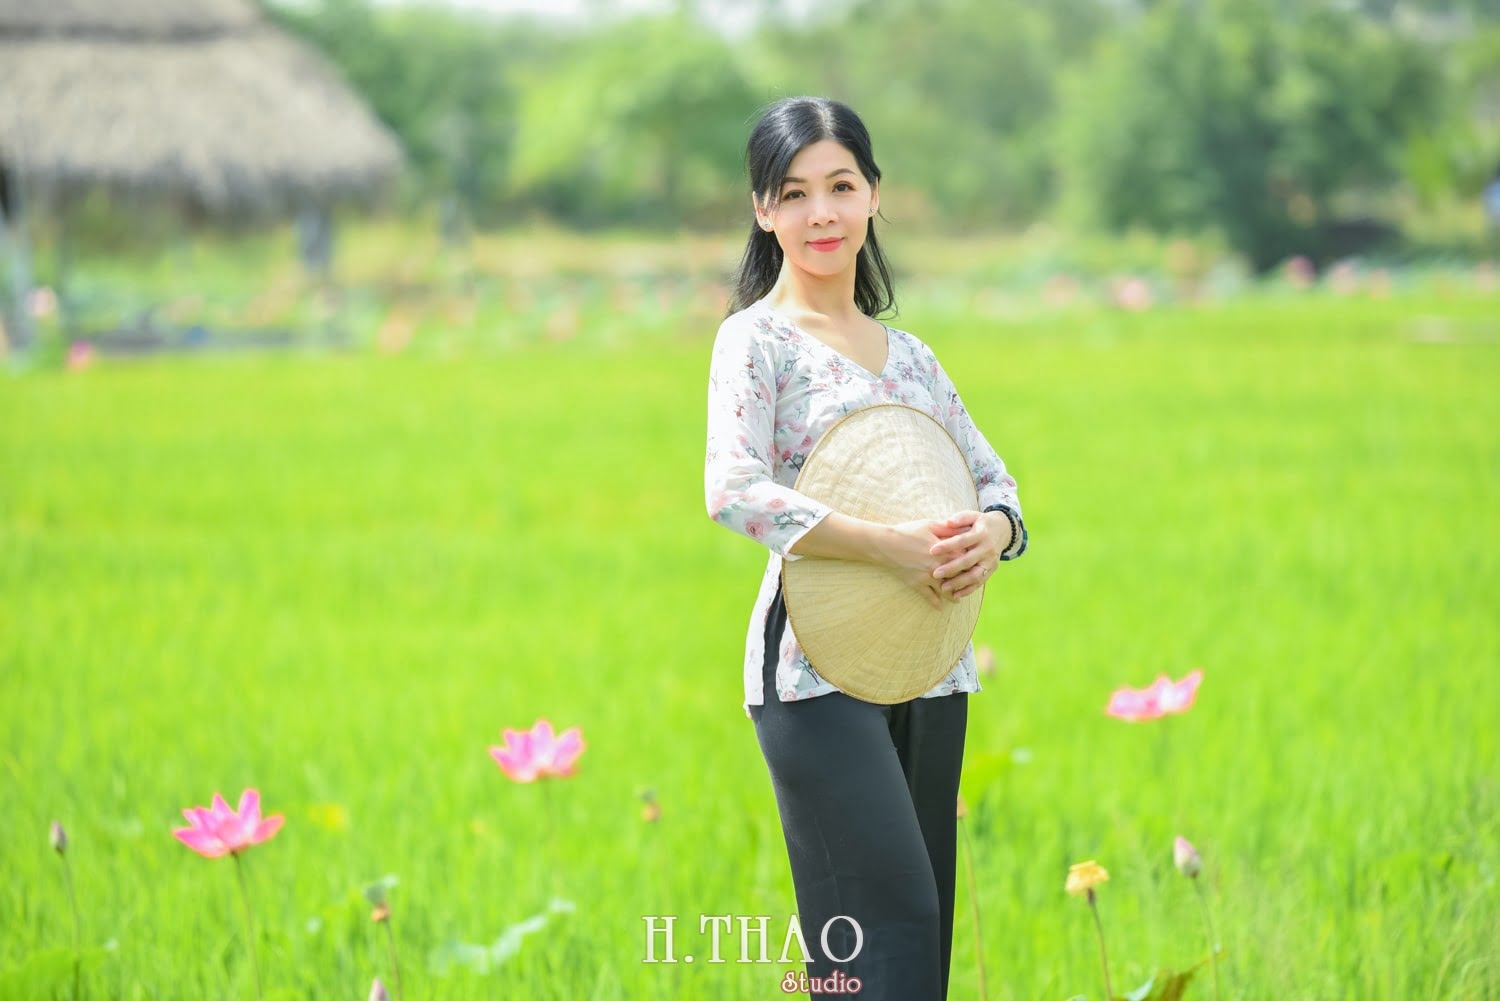 Anh Hoa sen 42 min - Album ảnh concept đồng quê Việt Nam tuyệt đẹp- HThao Studio